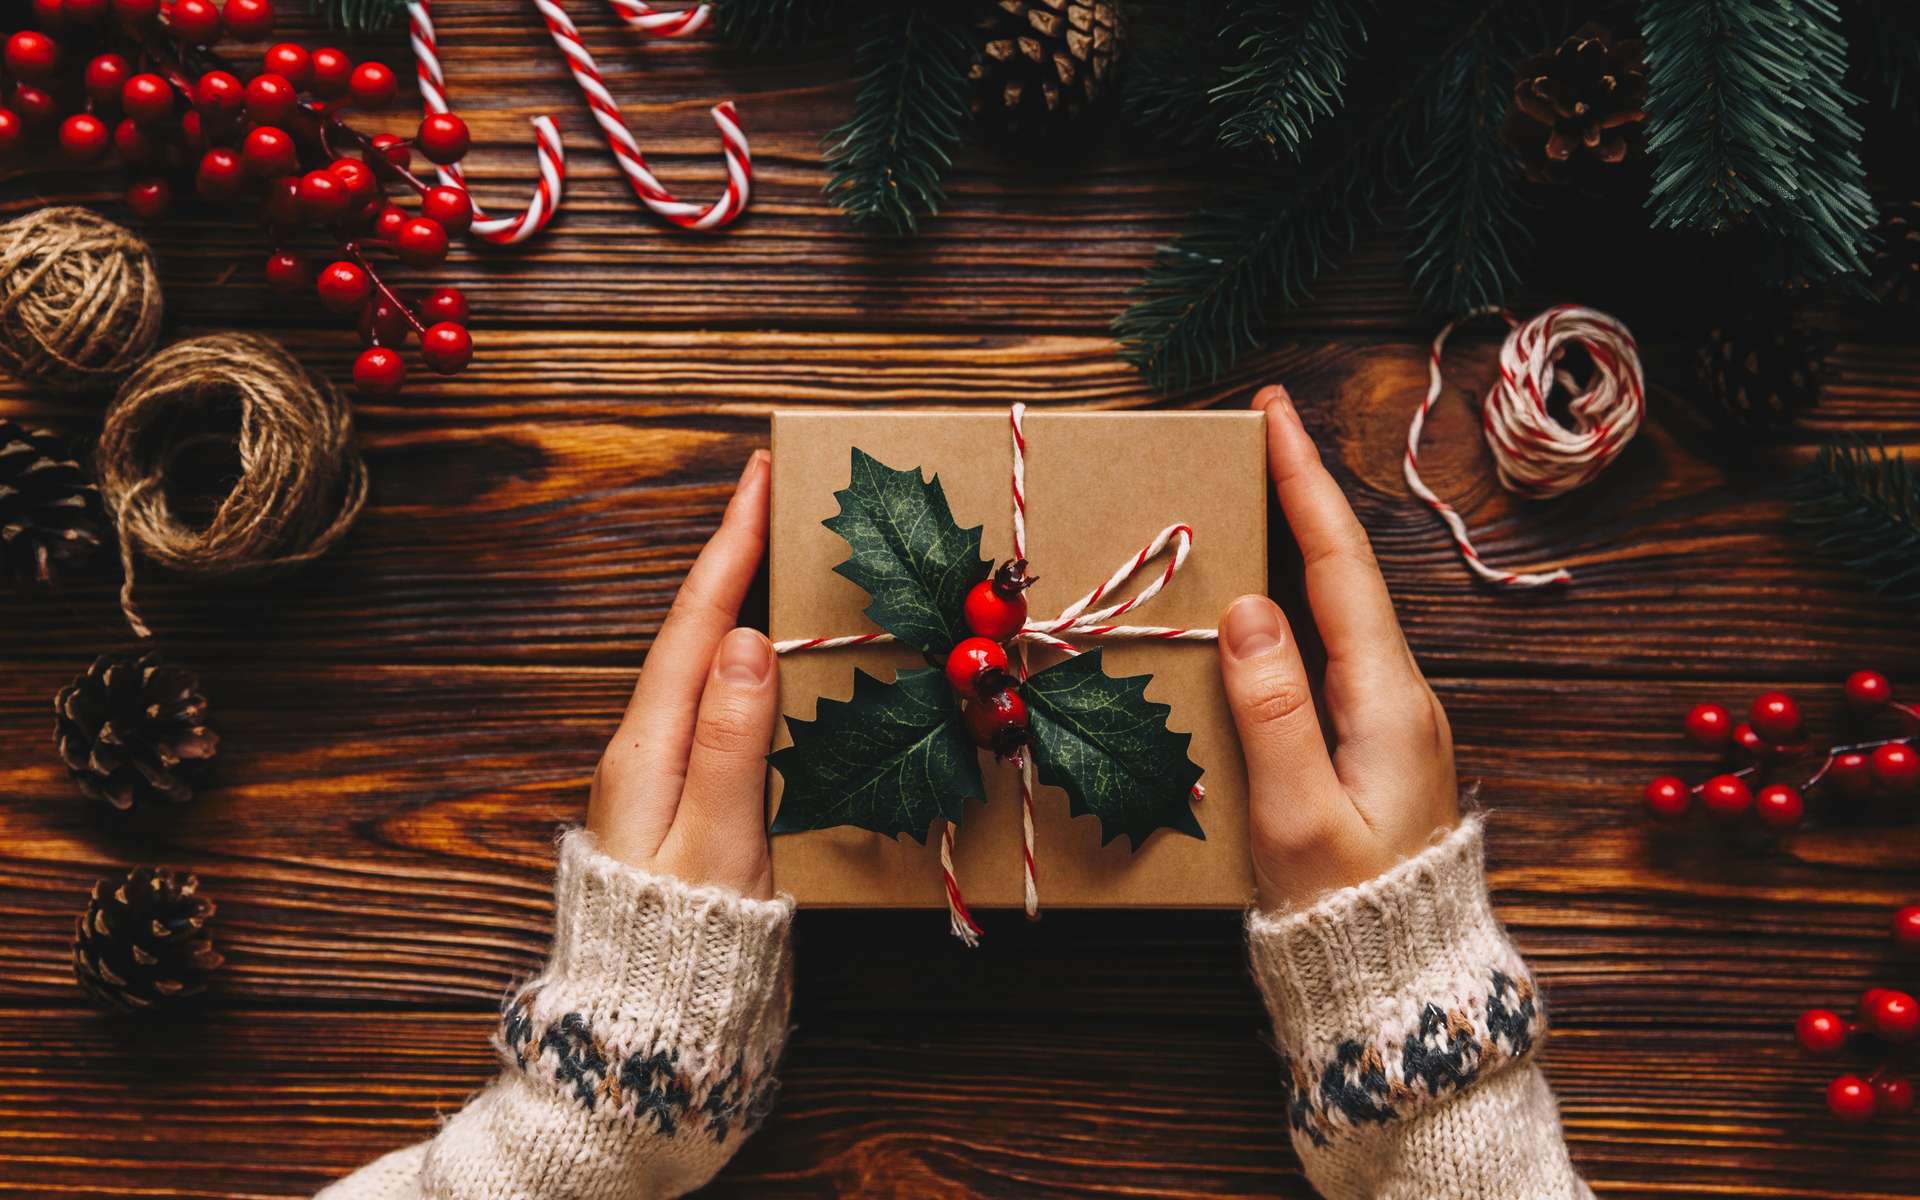 On peut deviner vos pensées en vous observant agiter vos cadeaux de Noël avant de les ouvrir !